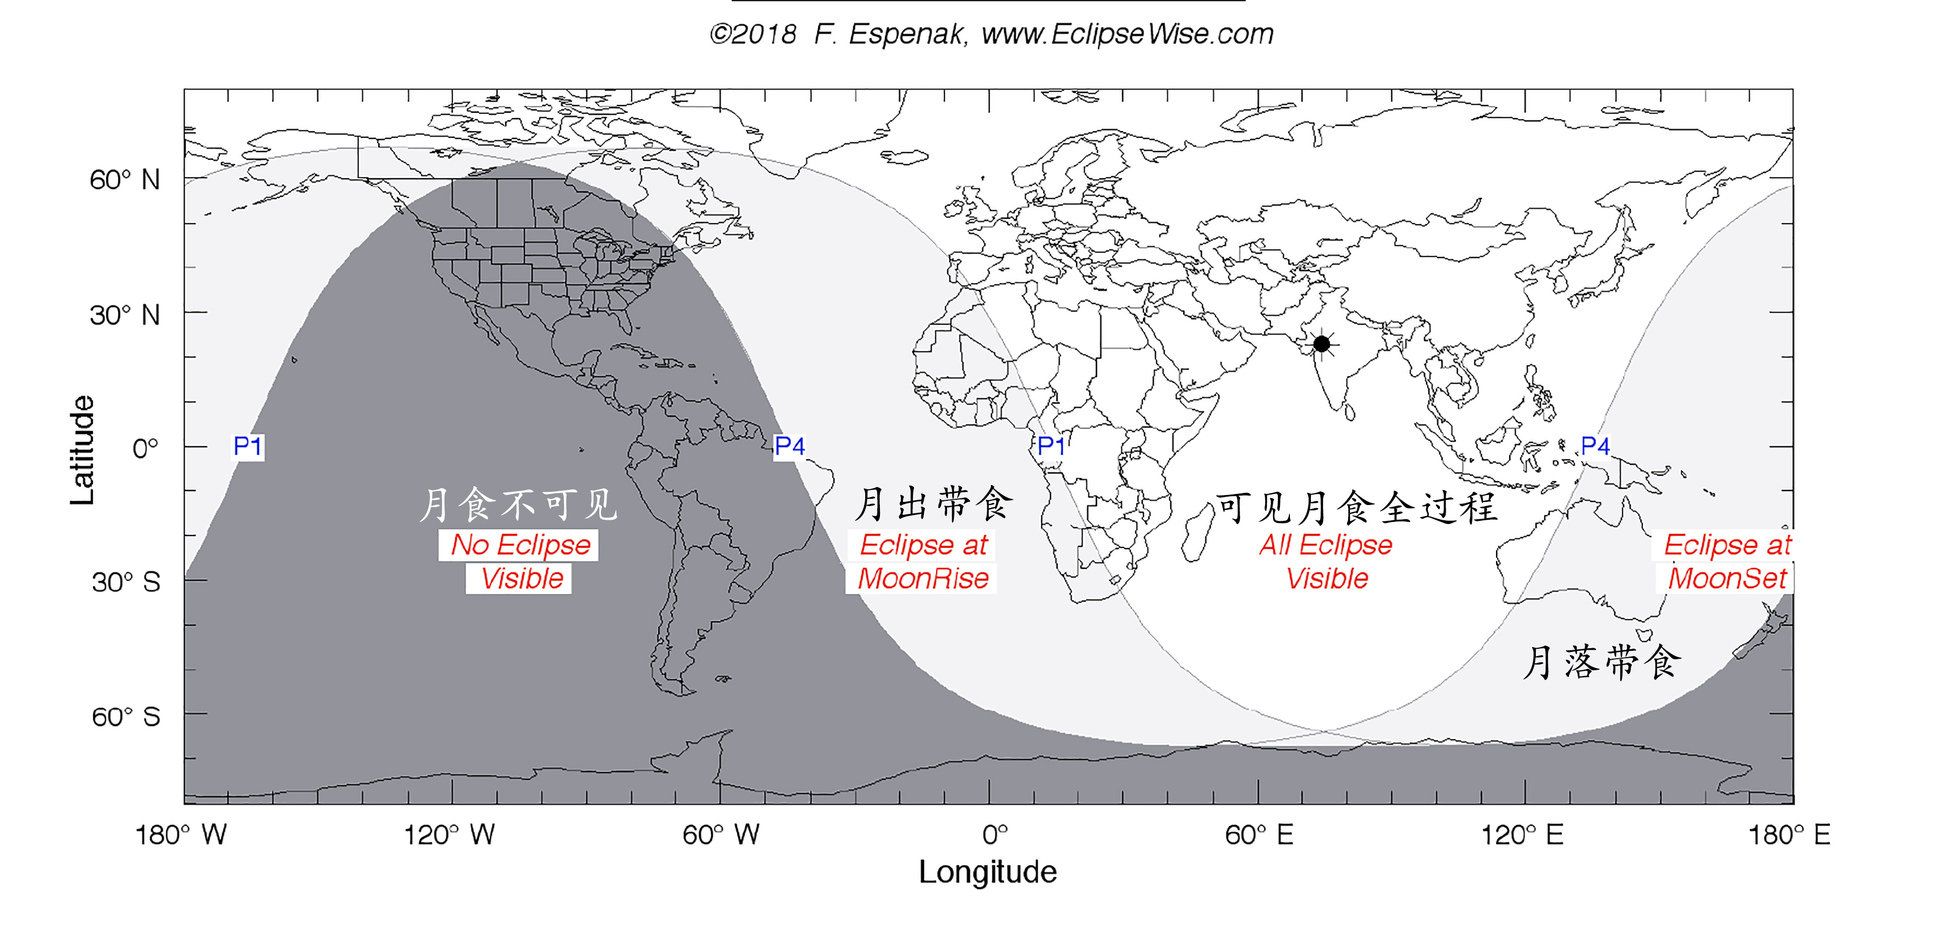 右图标示此次半影月食在地球上能见的情况，马来西亚处于全程能见的区域。在南北美洲及南极洲，月食不可见，而大西洋则能见半影月食发生于月出之时，另一边厢的澳洲及太平洋区则能看见月落带食现象。（图片来源：http://eclipsewise.com/oh/ec2020.html#LE2020Jan10N—）